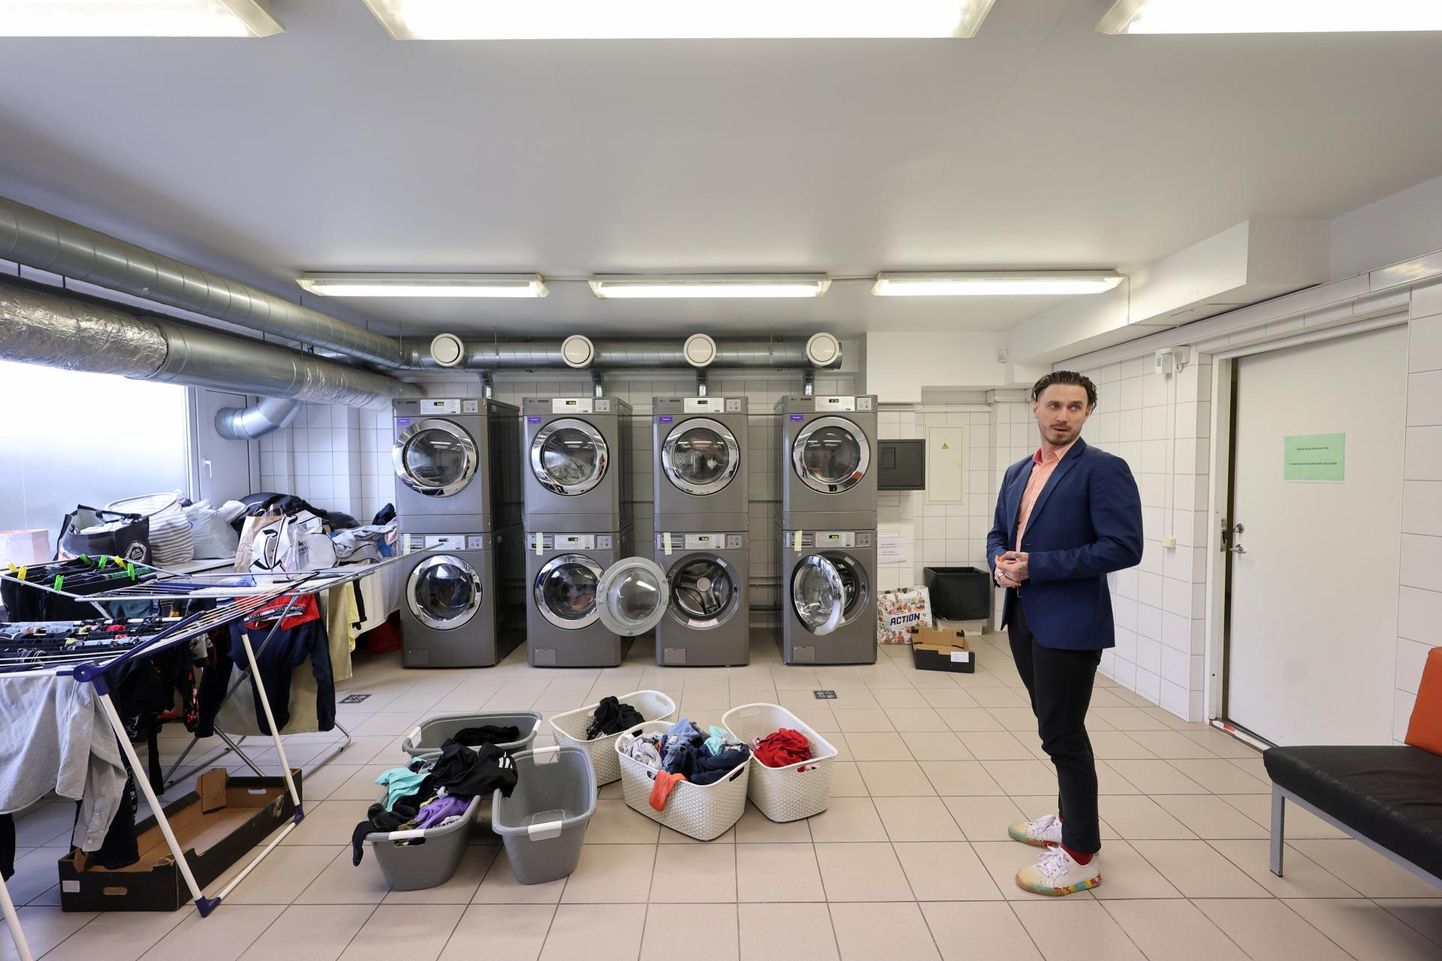 Eile pärastlõunal näitas OÜ Torni Hostel juhatuse liige Roland Aik Kask, kui kiired on uued pesumasinad: elanikud pole juba korvides ootavale puhtale pesule veel järelegi jõudnud, kui uus pesu on juba masinas.